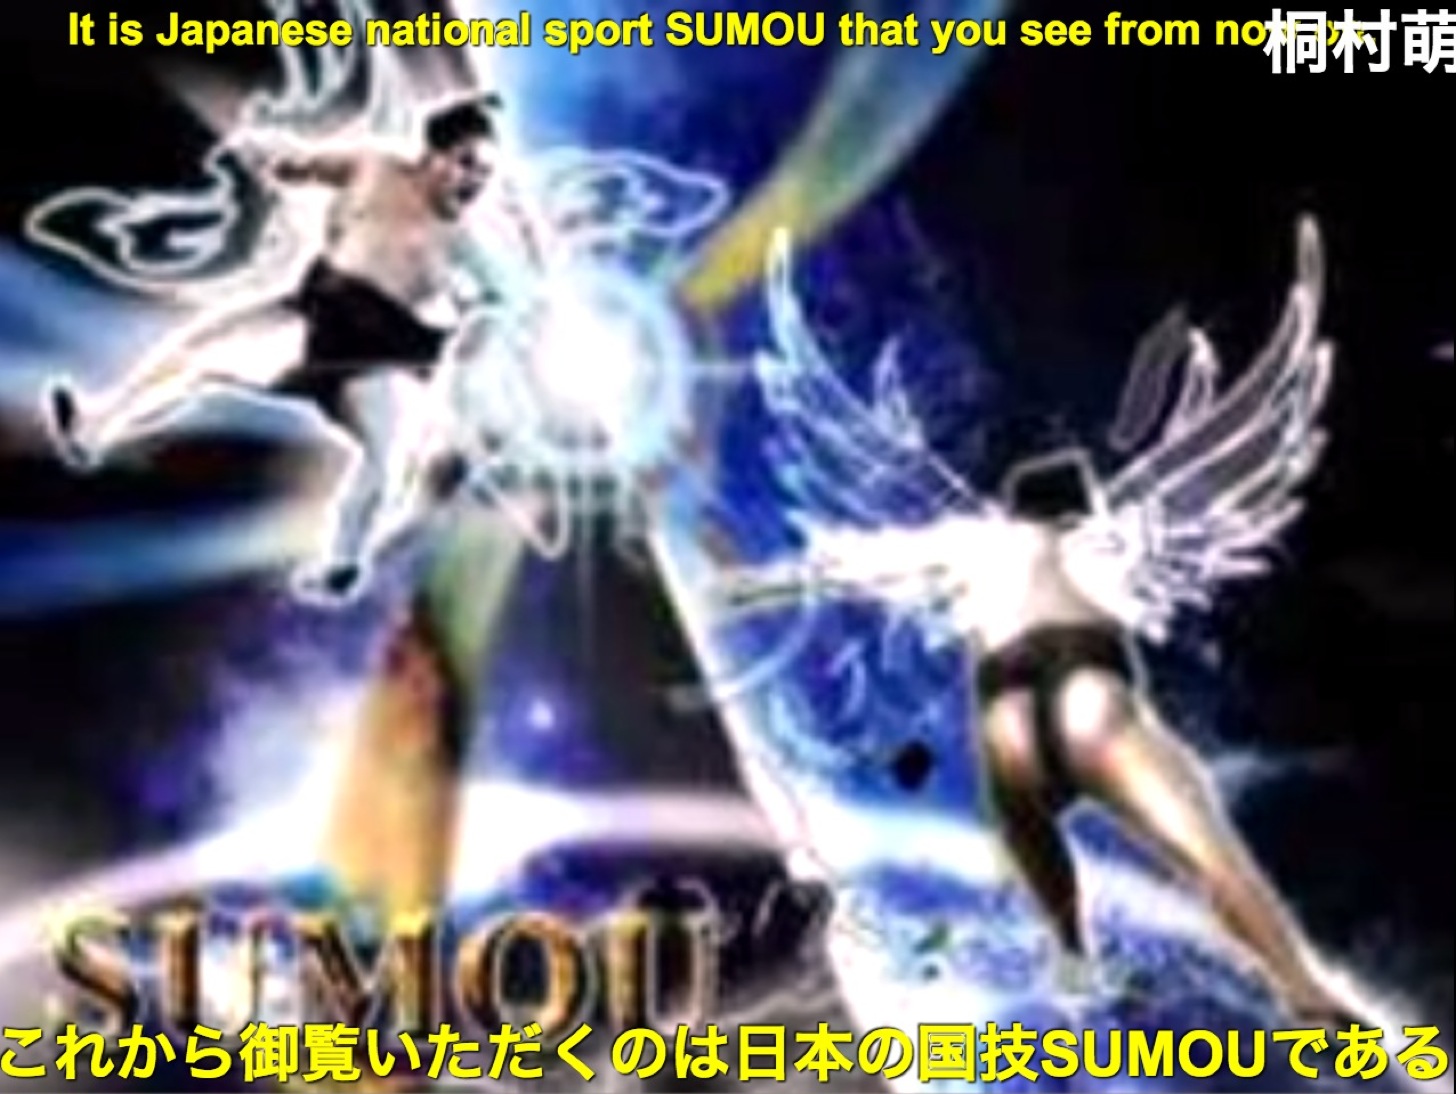 これから御覧いただくのは日本の国技SUMOUである